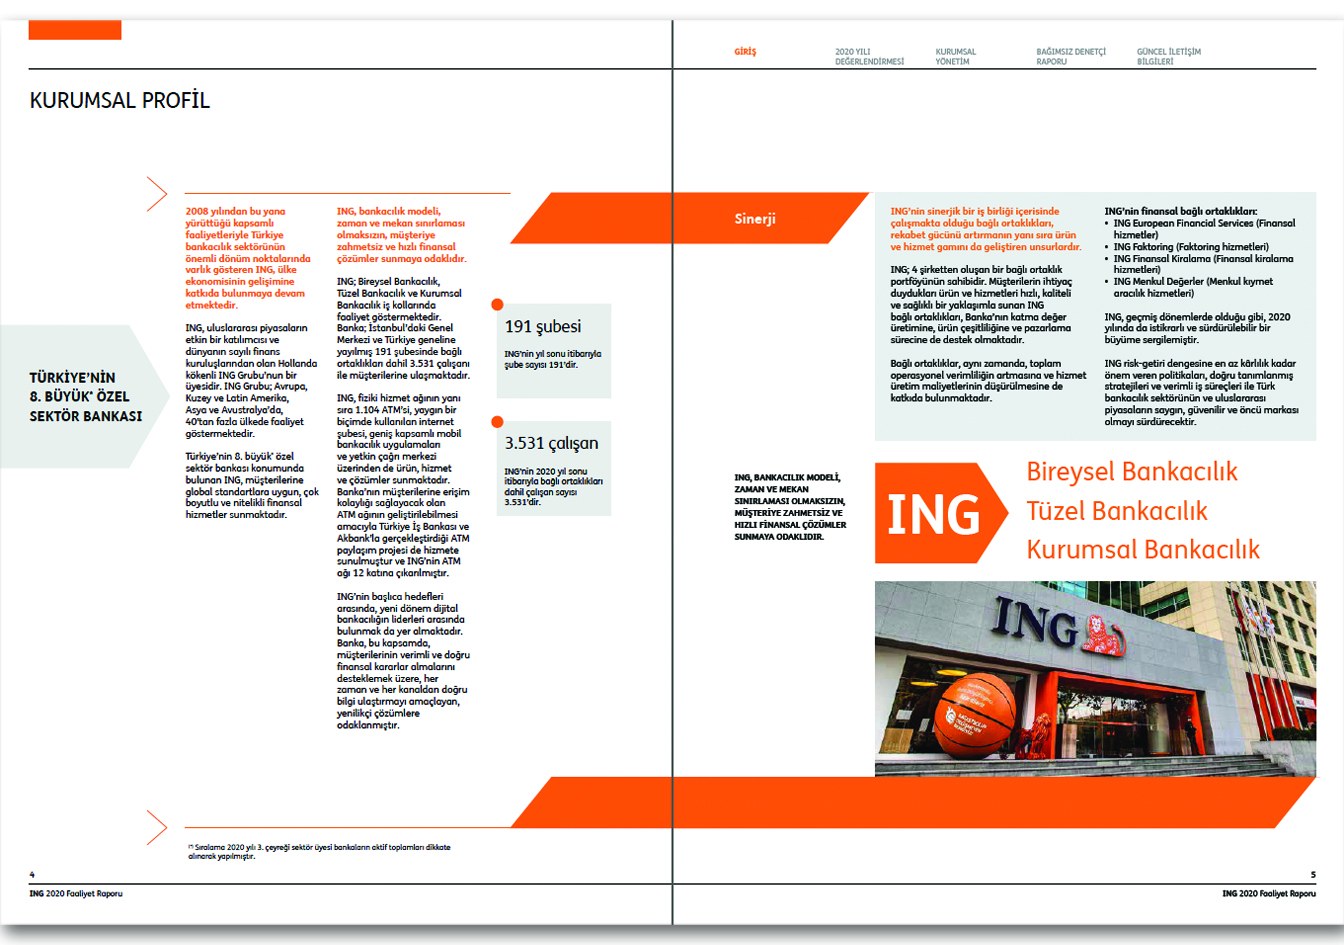 ING BANK / 2020 Faaliyet Raporu / 2020 Annual Report